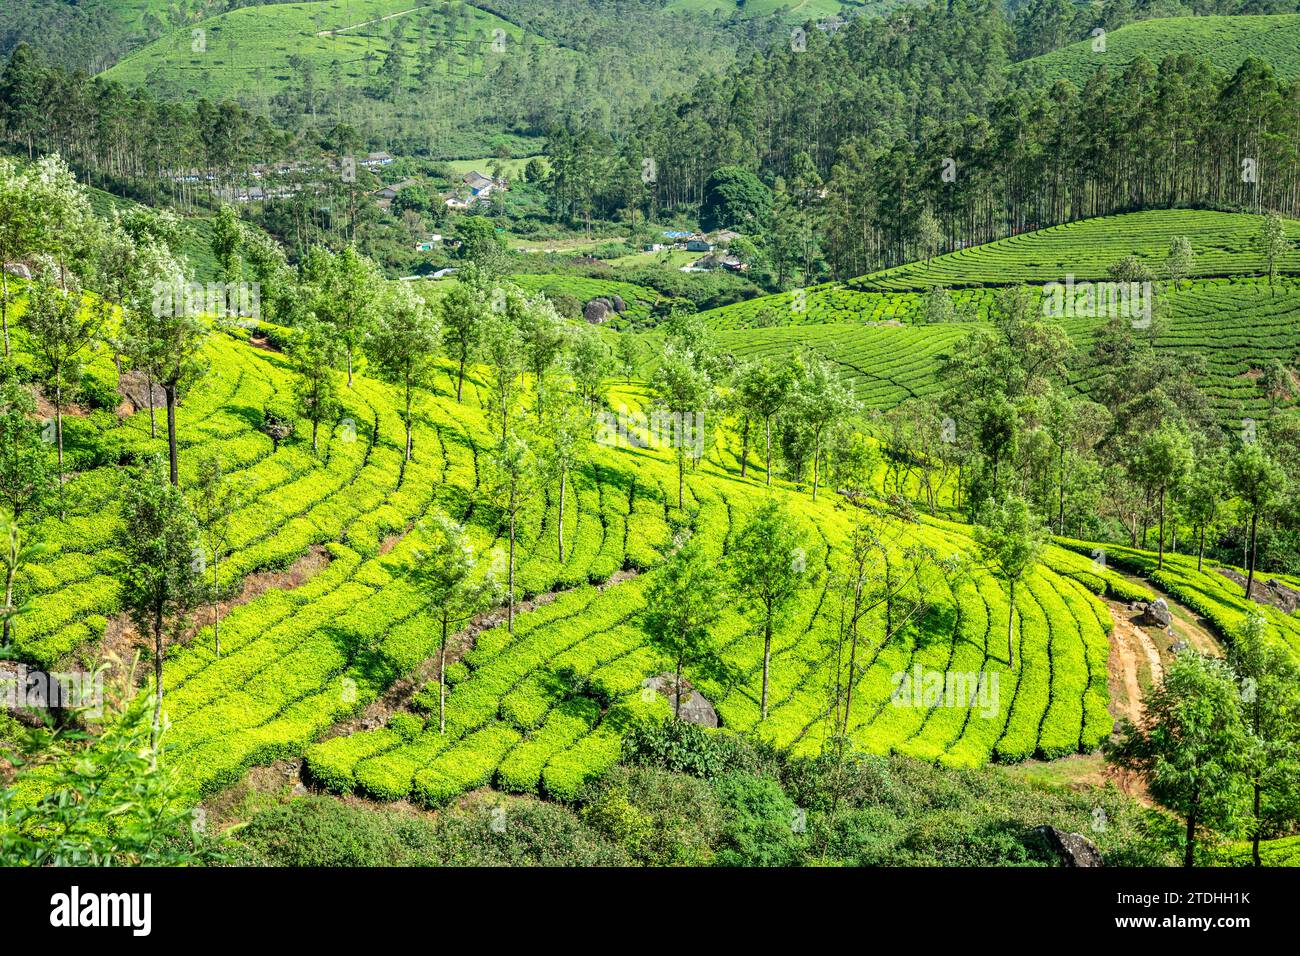 Champs verts de plantations de thé sur le paysage des collines, Munnar, Kerala, sud de l'Inde Banque D'Images